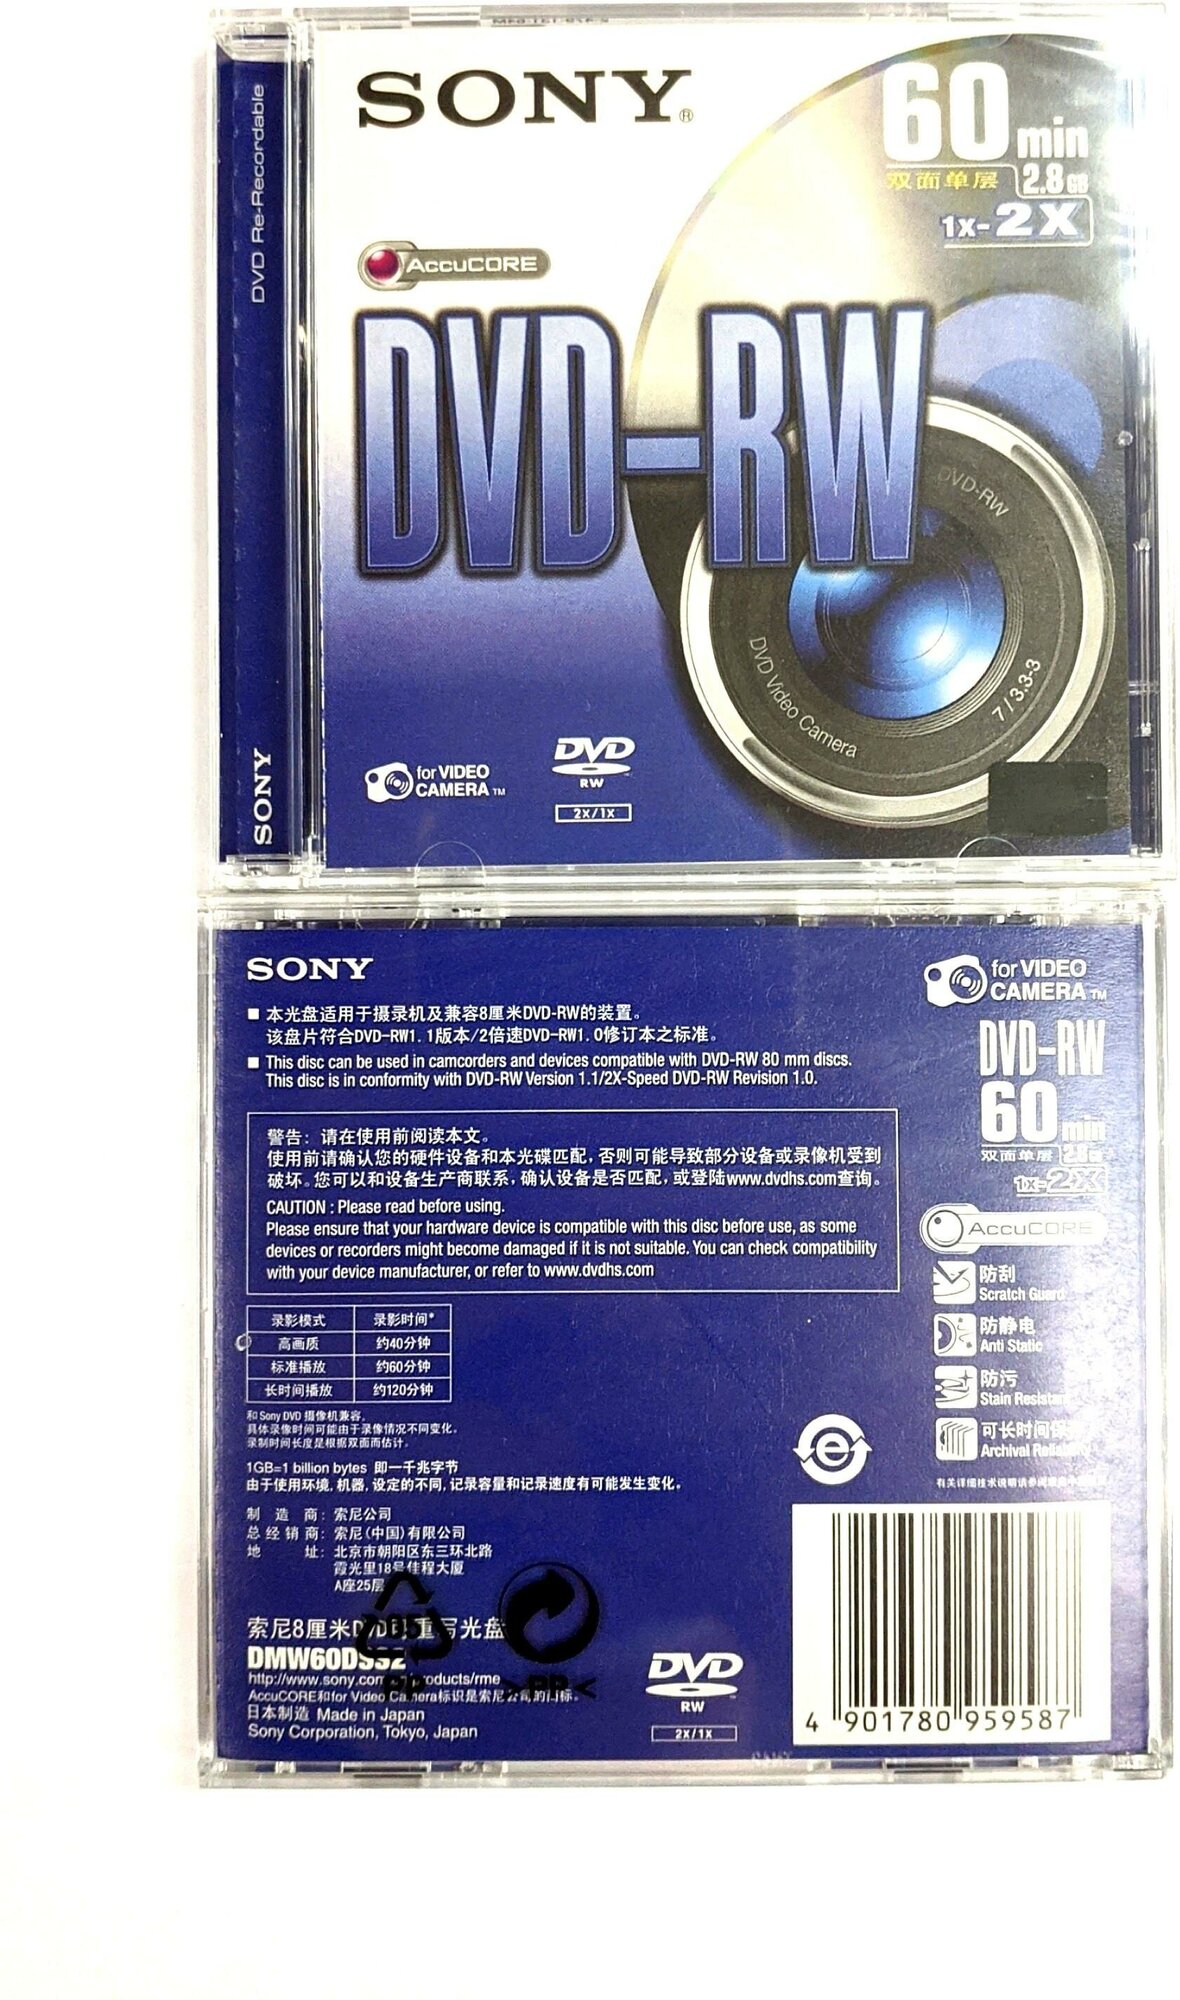 Цифровой оптический диск mini DVD-RW SONY, 60 min, 2,8 Gb.